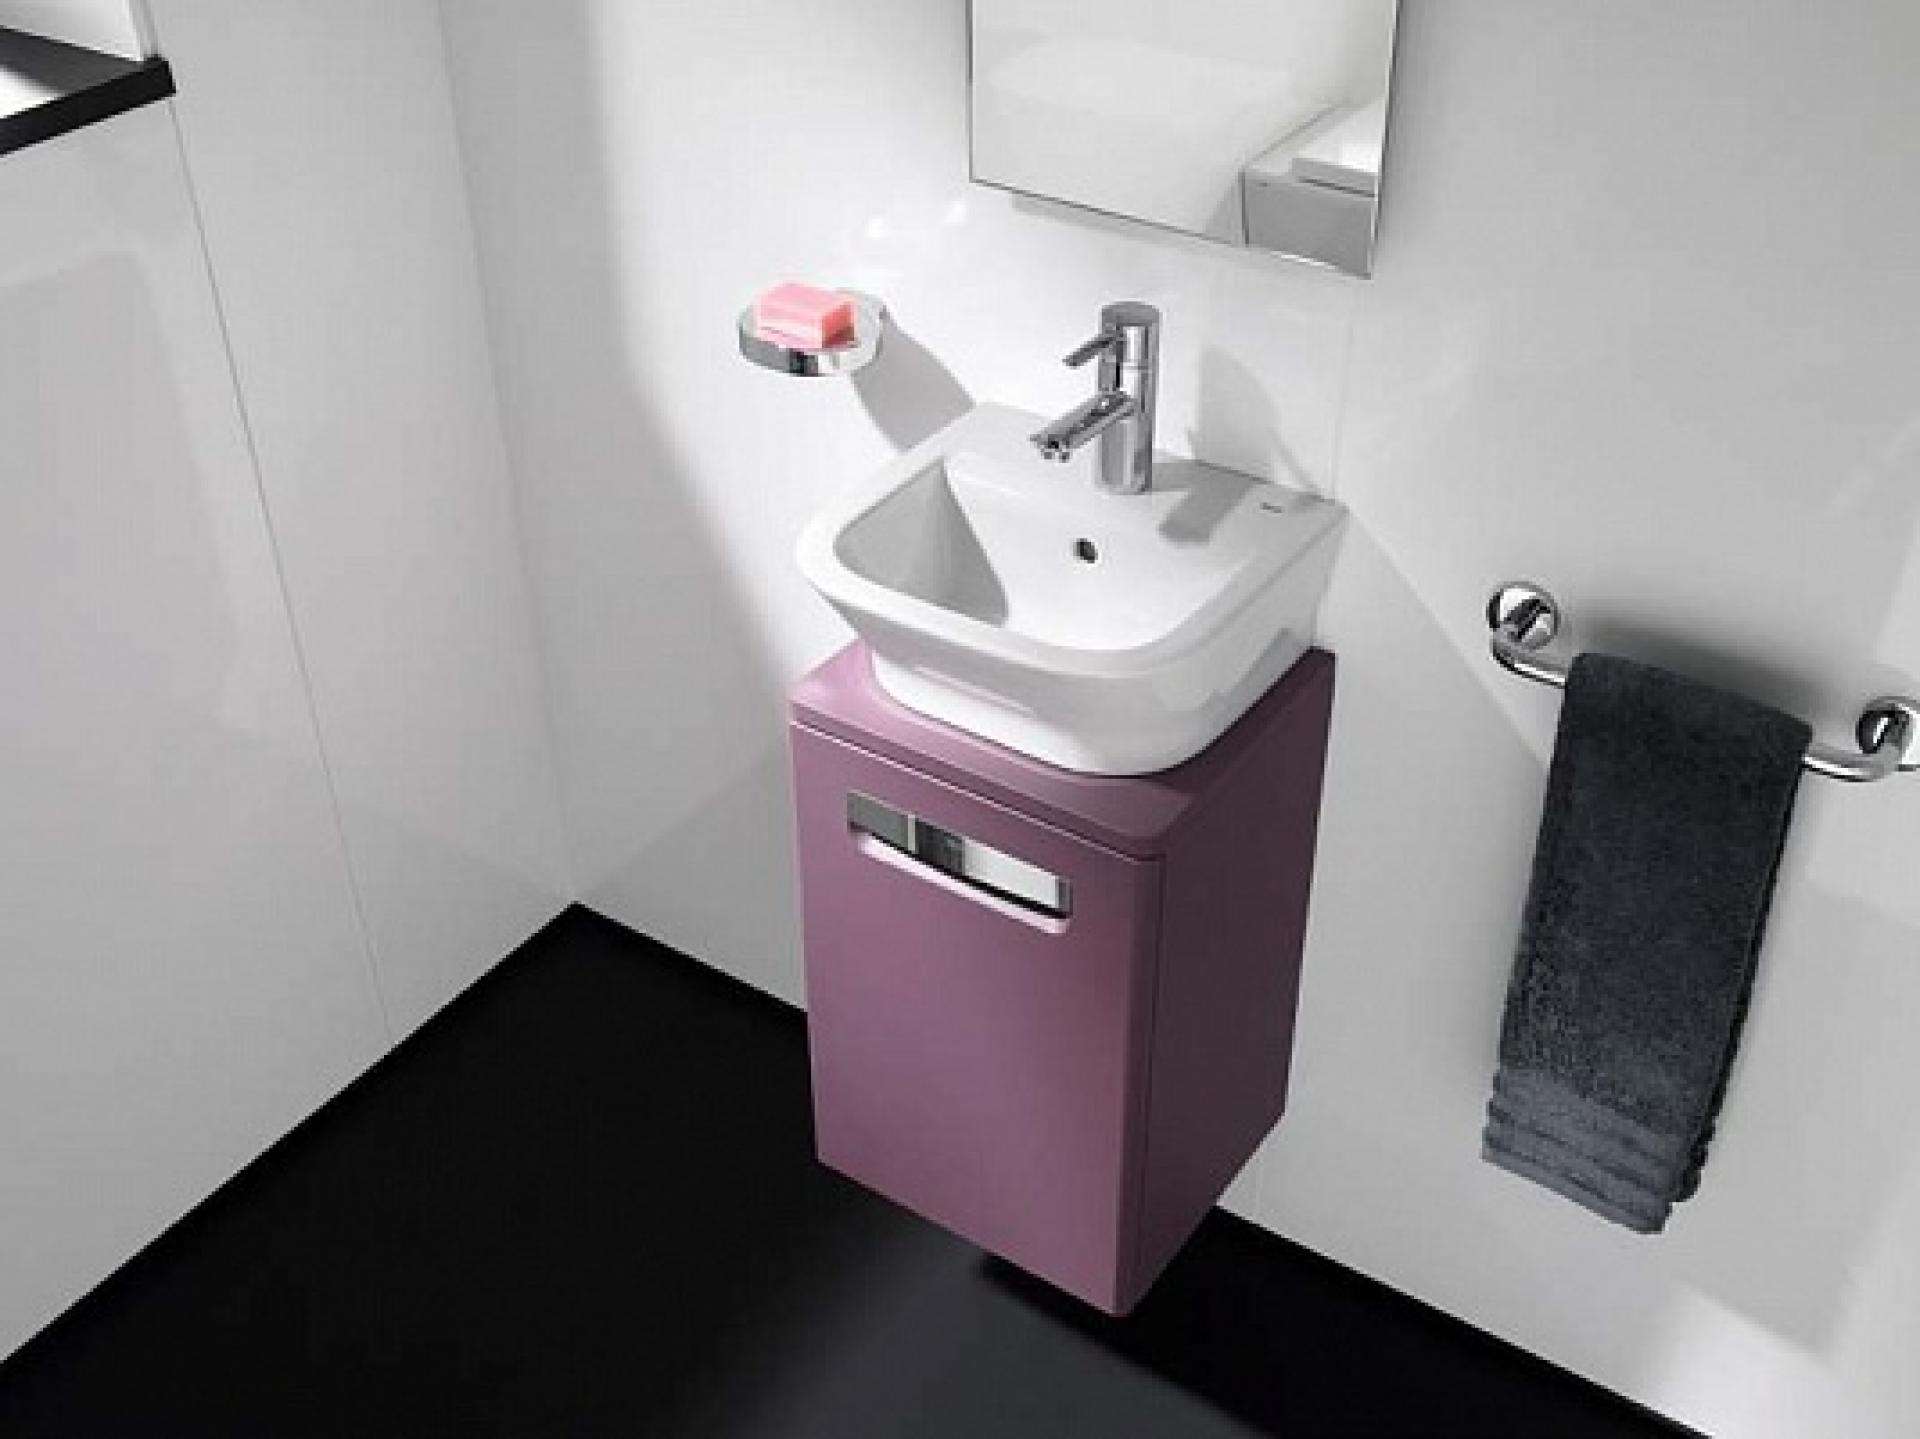 Фото: Комплект мебели 45 смRoca Gap фиолетовая, со светильником Roca в каталоге